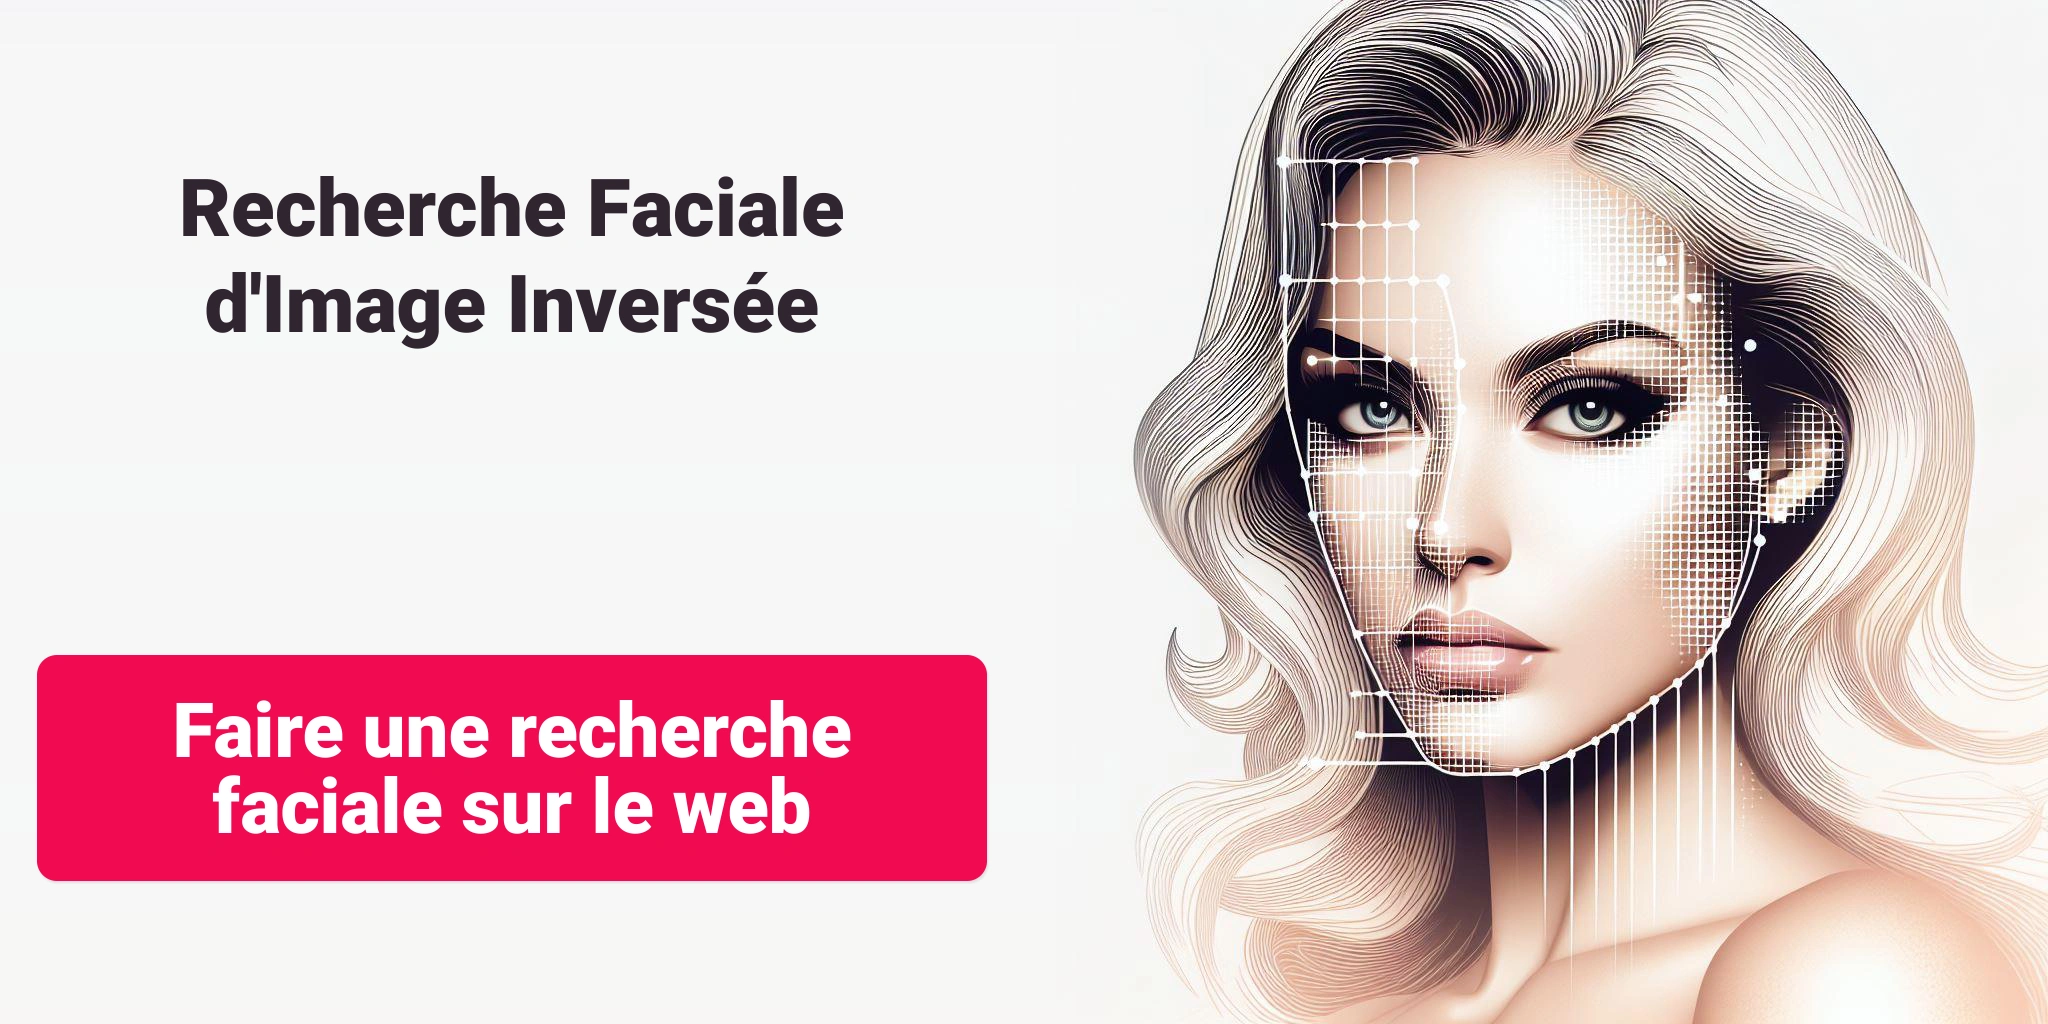 Recherche Faciale d'Image Inversée - Faire une recherche faciale sur le web